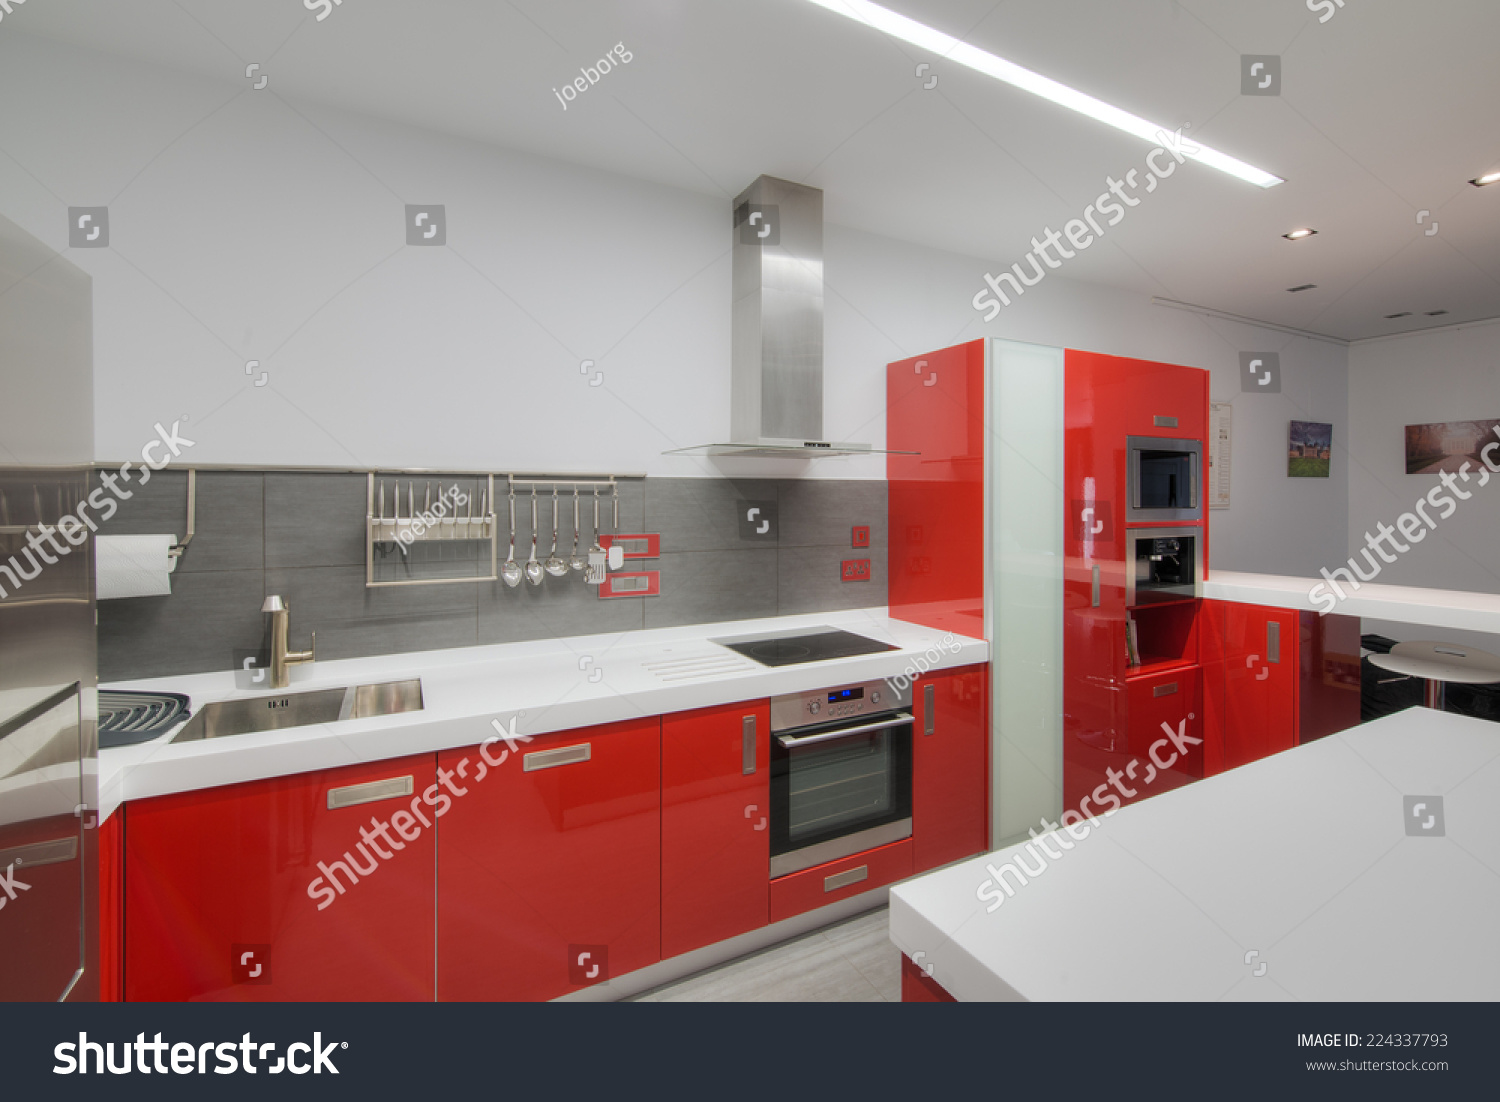 Unique Kitchen Appliances Red